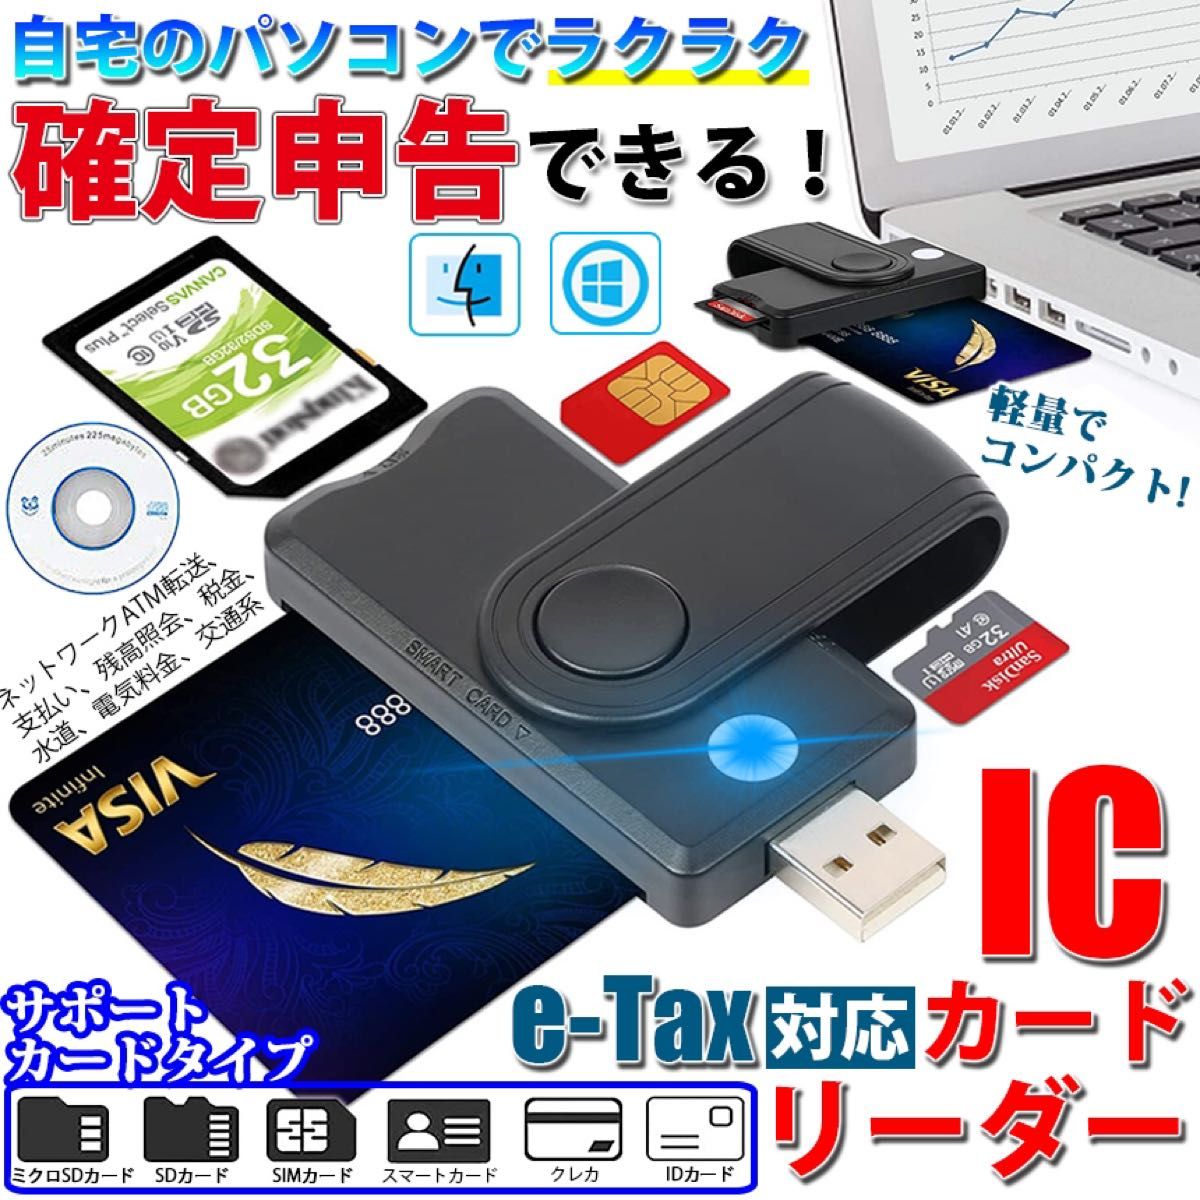 スマートカードリーダー USB ICチップ マイナポイント 【在庫処分